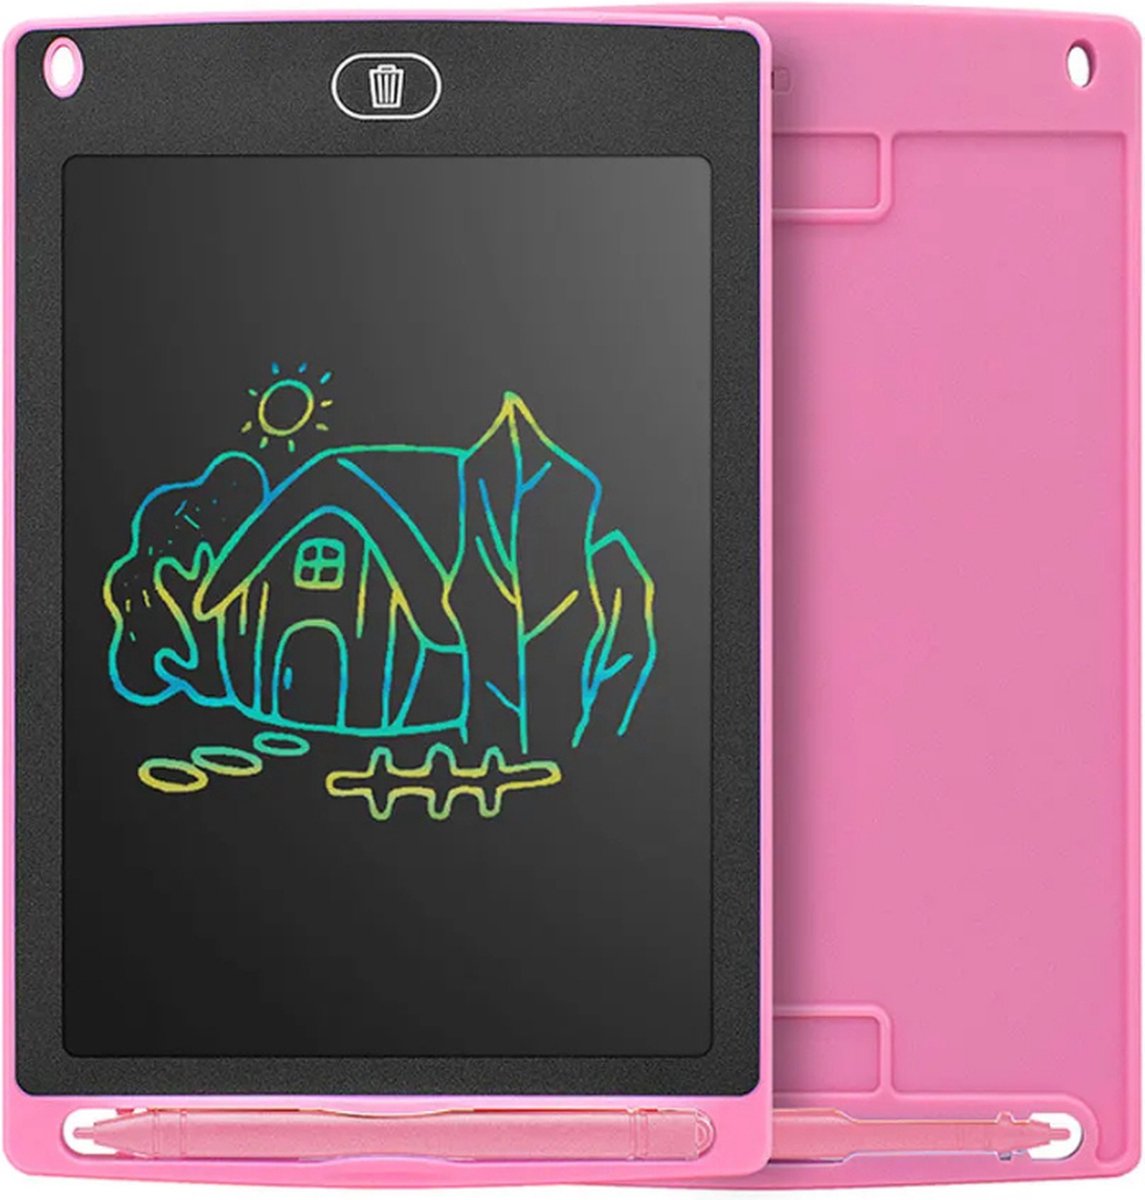 P&P Goods Tekentablet - Tekentablet Voor Kinderen - Tekenbord - Draagbaar Formaat - Klein Formaat - Teken Tablet - 6.5 Inch - Roze